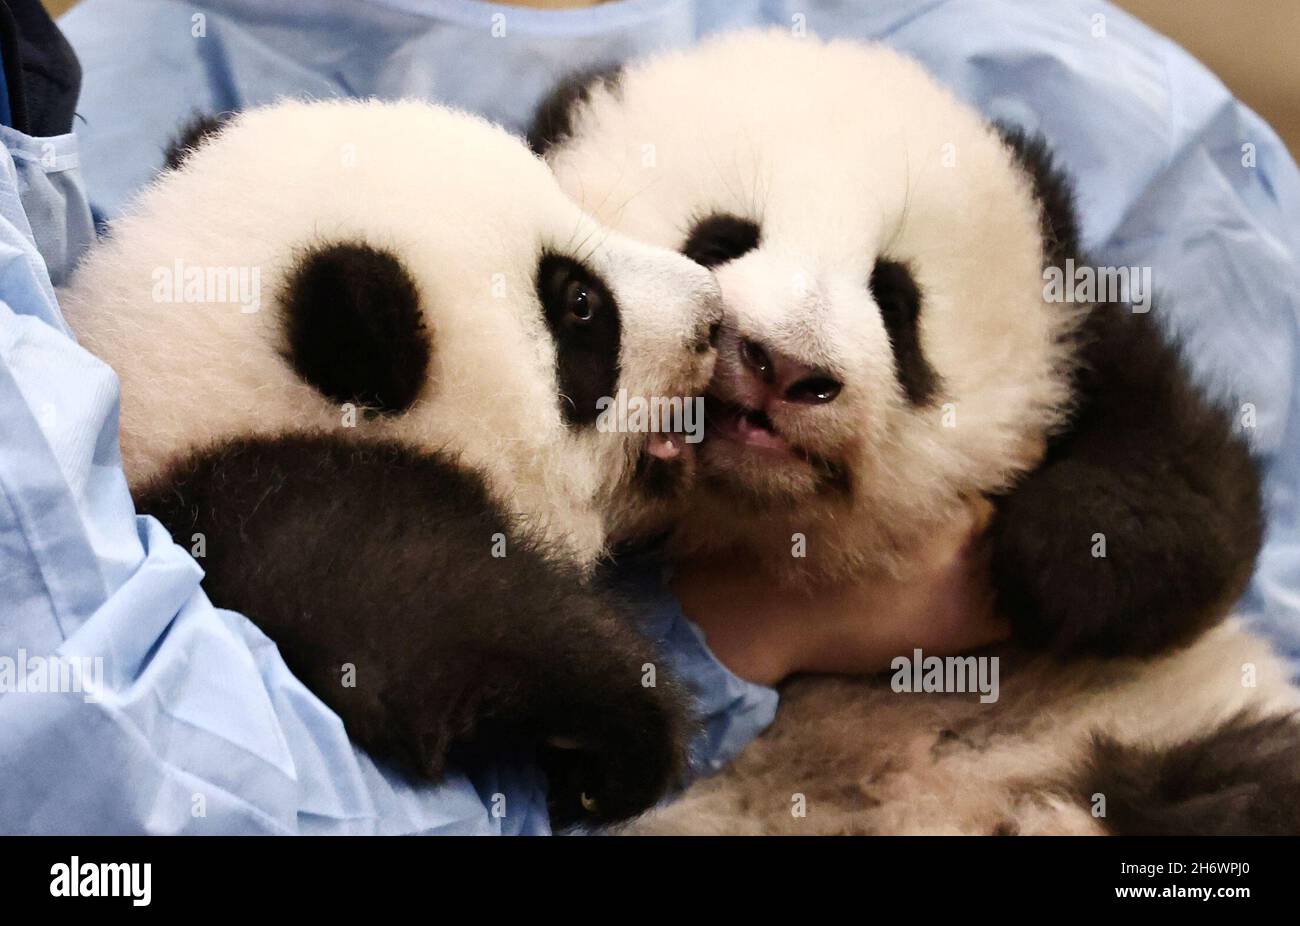 Les gardiens d'animaux posent avec des pandas nouveau-nés jumeaux avant une cérémonie de dénomination au zoo de Beauval, à Saint-Aignan-sur-cher, France, le 18 novembre 2021.REUTERS/Sarah Meyssonnier Banque D'Images